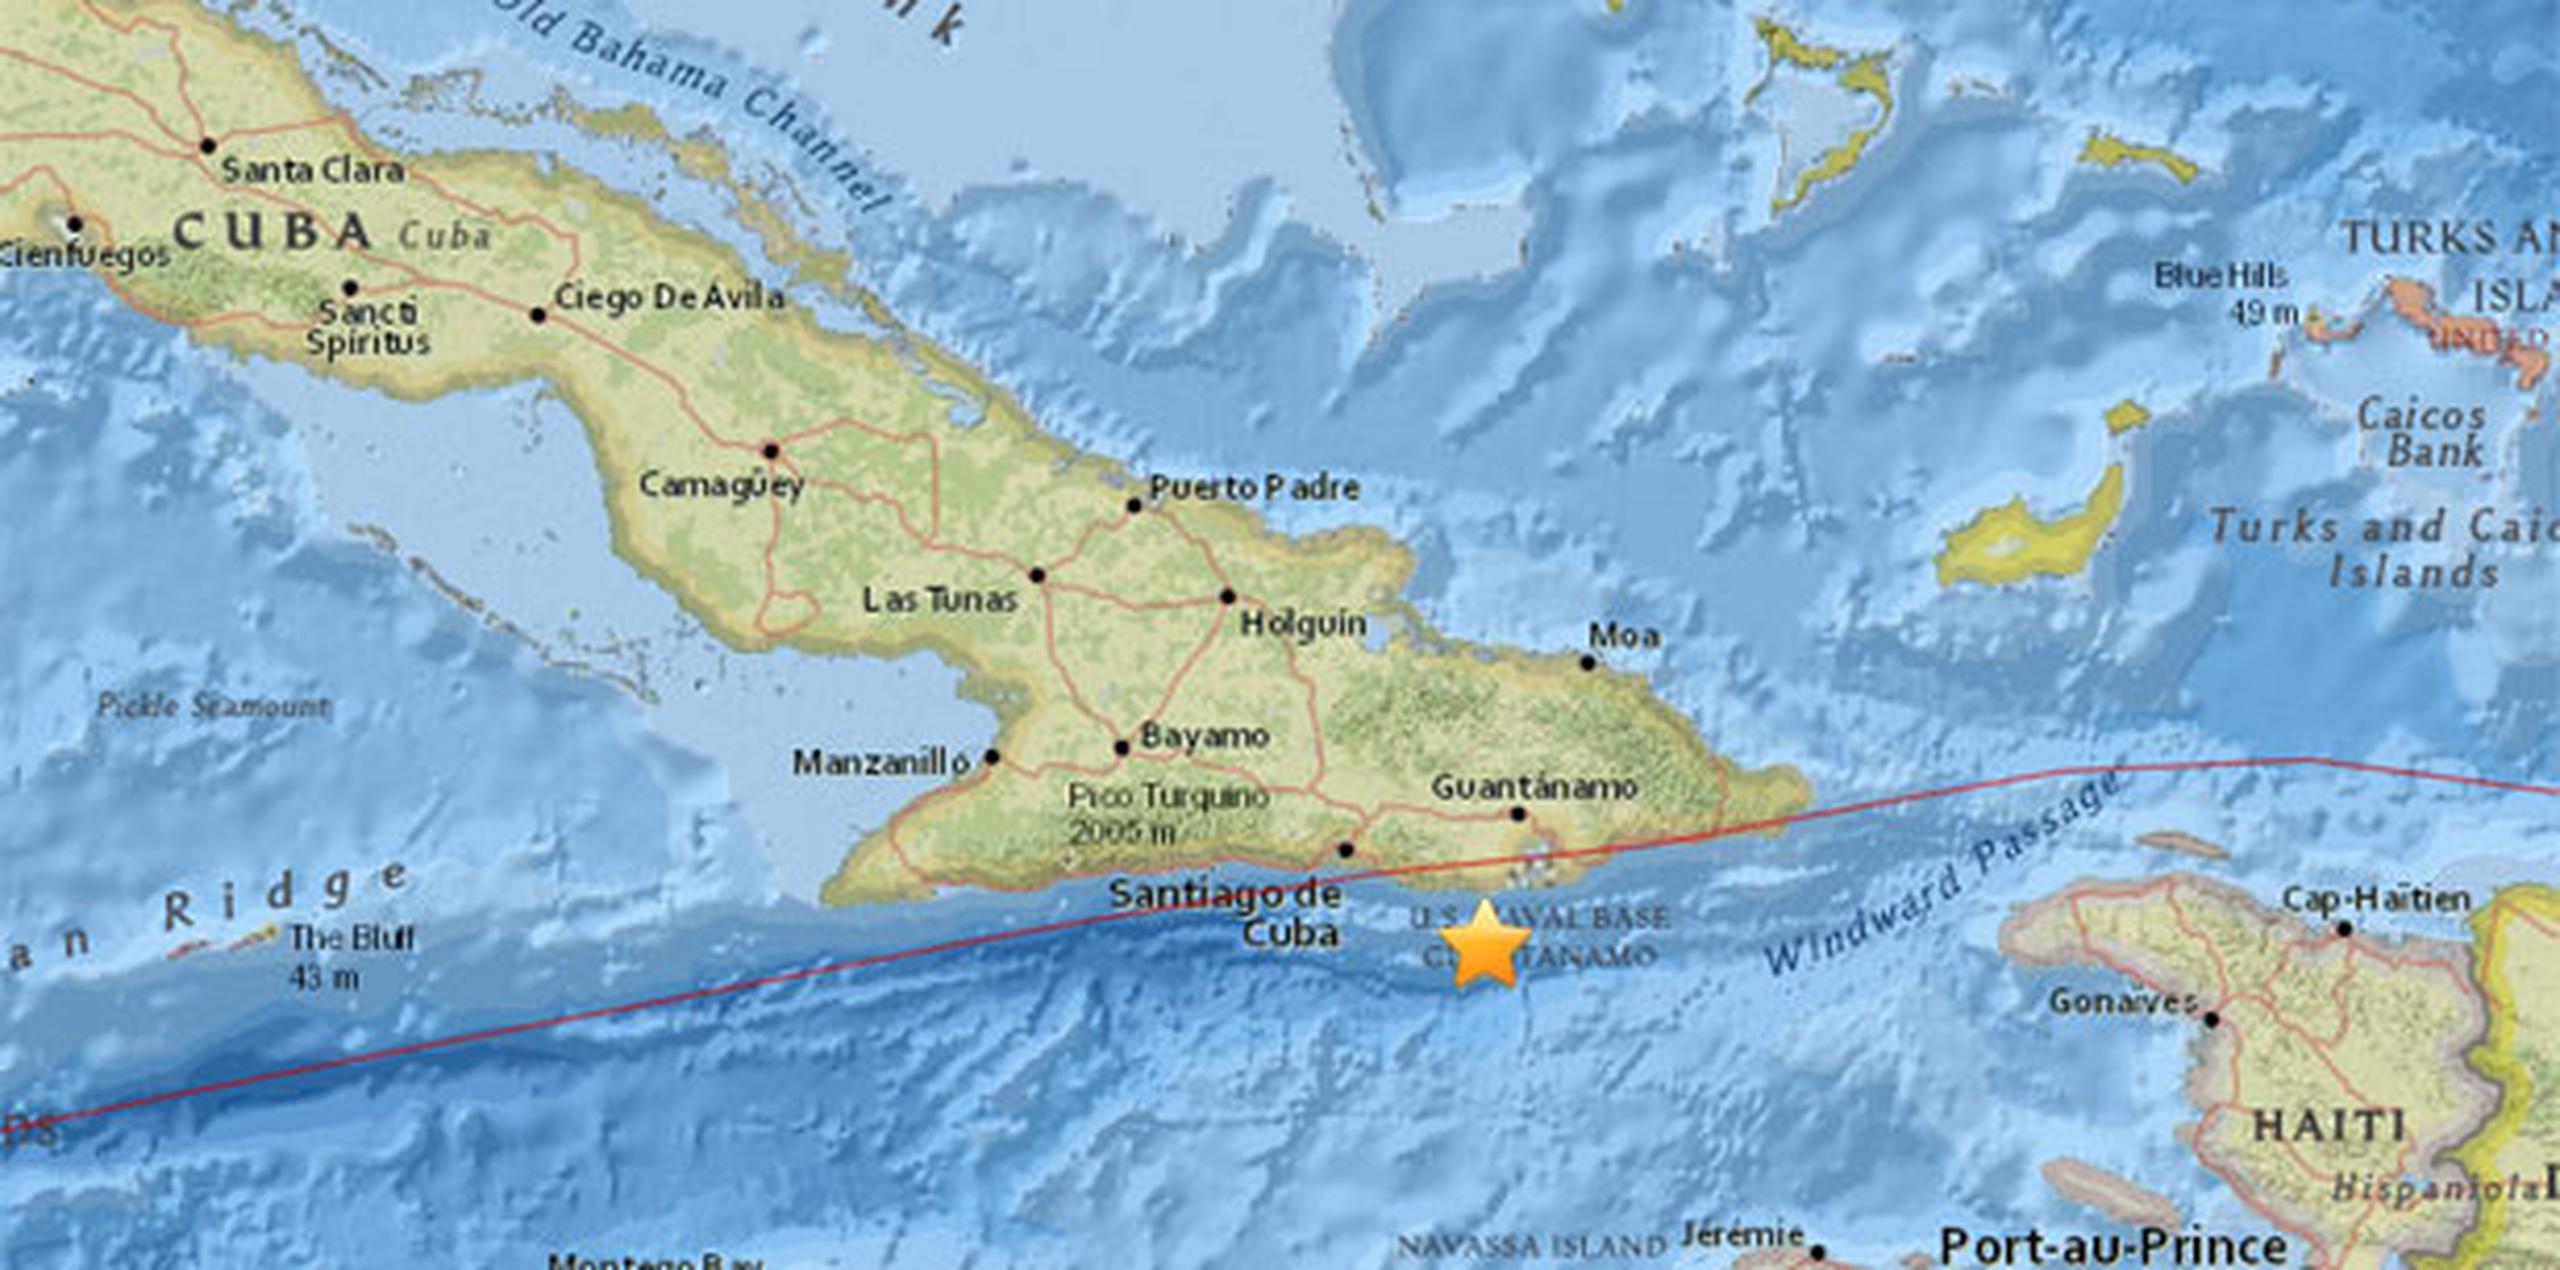 Cuba es un país sísmicamente activo, especialmente su región oriental, porque se encuentra en la frontera de las placas tectónicas de Norteamérica y el Caribe. (usgs.gov)